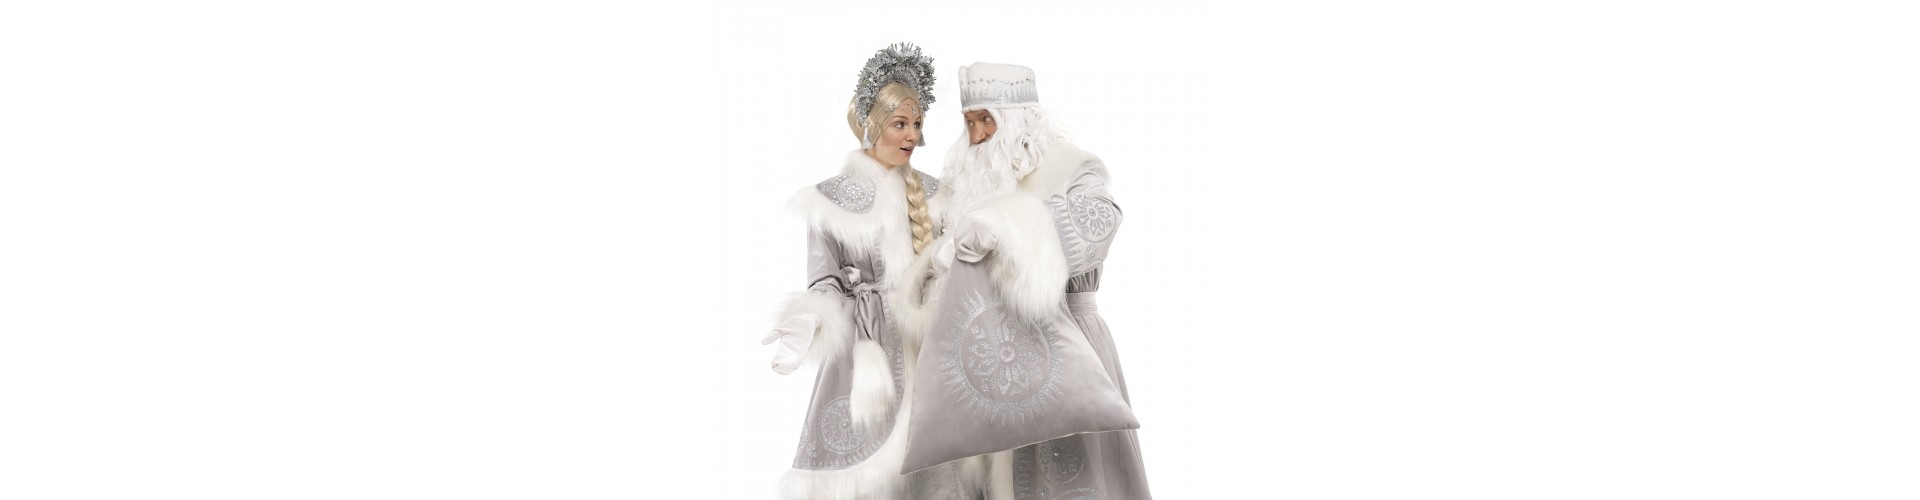 Доставка новорічних костюмів в Вінницю і по області